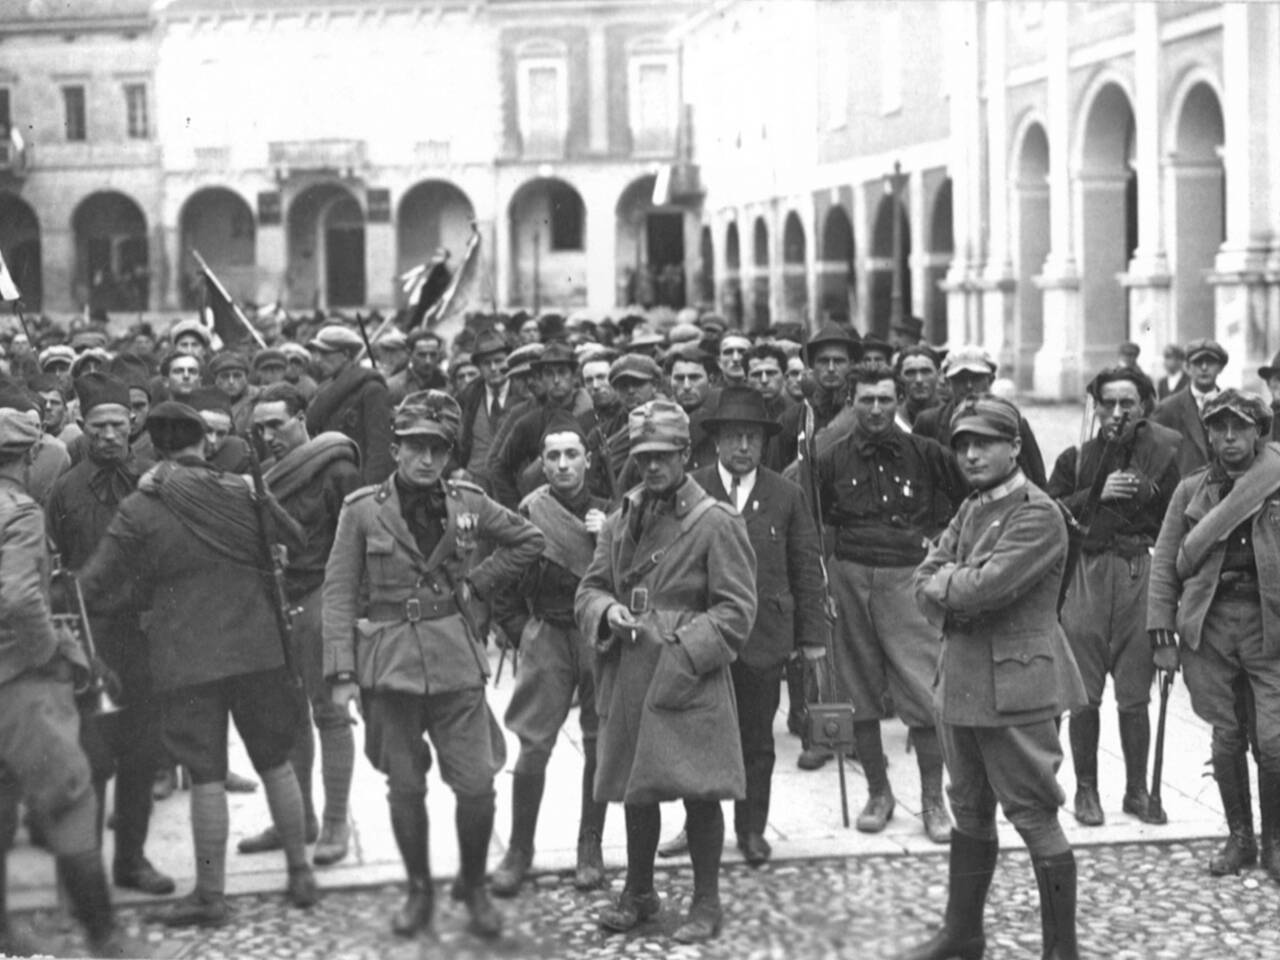 squadristi marcia su roma guastalla 1922 1